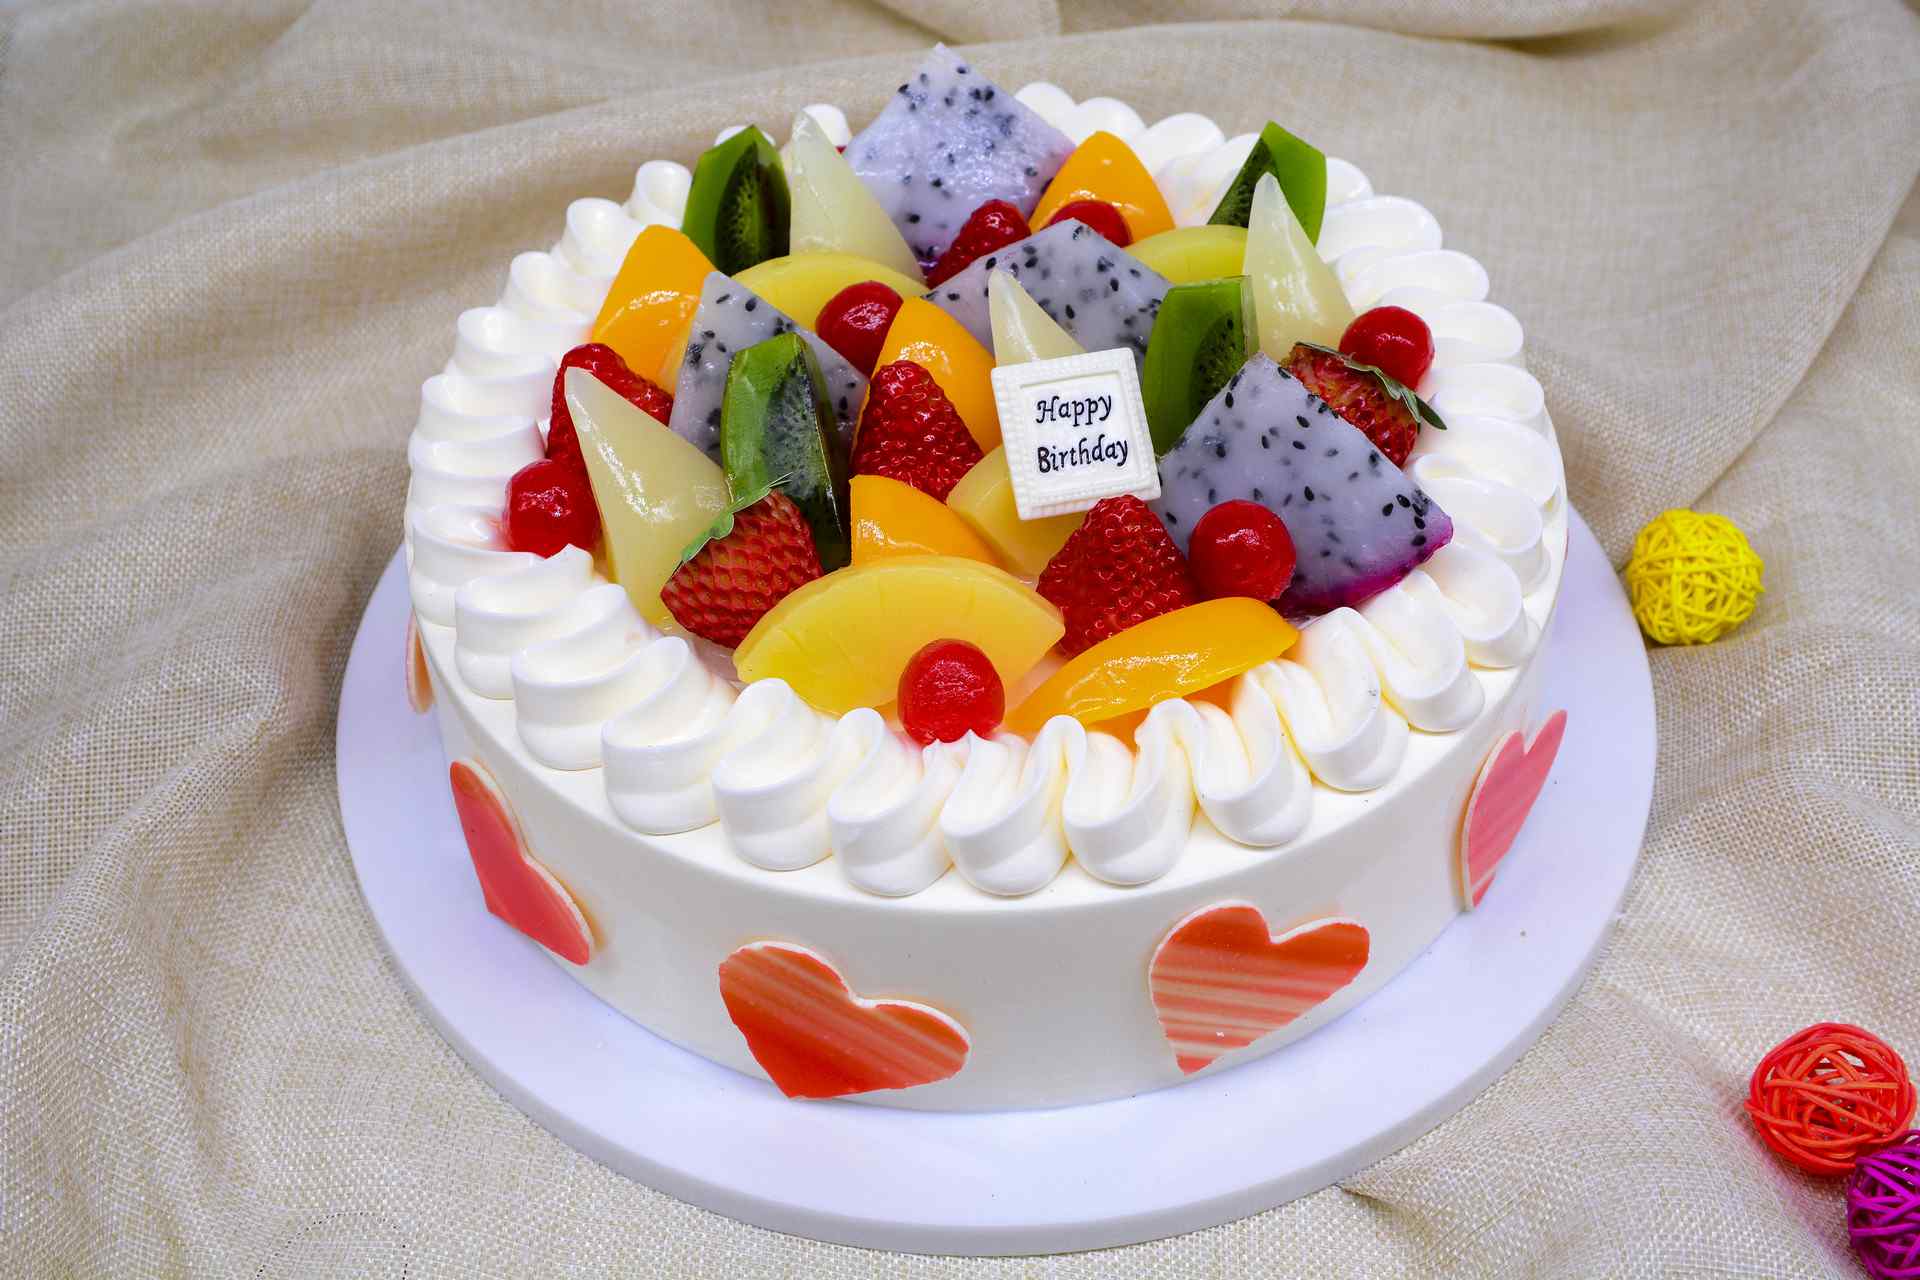 蛋糕/爱的彩虹-圆形水果蛋糕，新鲜水果装饰，拇指饼干围边 .适用于:恋情,生日,祝福,-七彩蛋糕